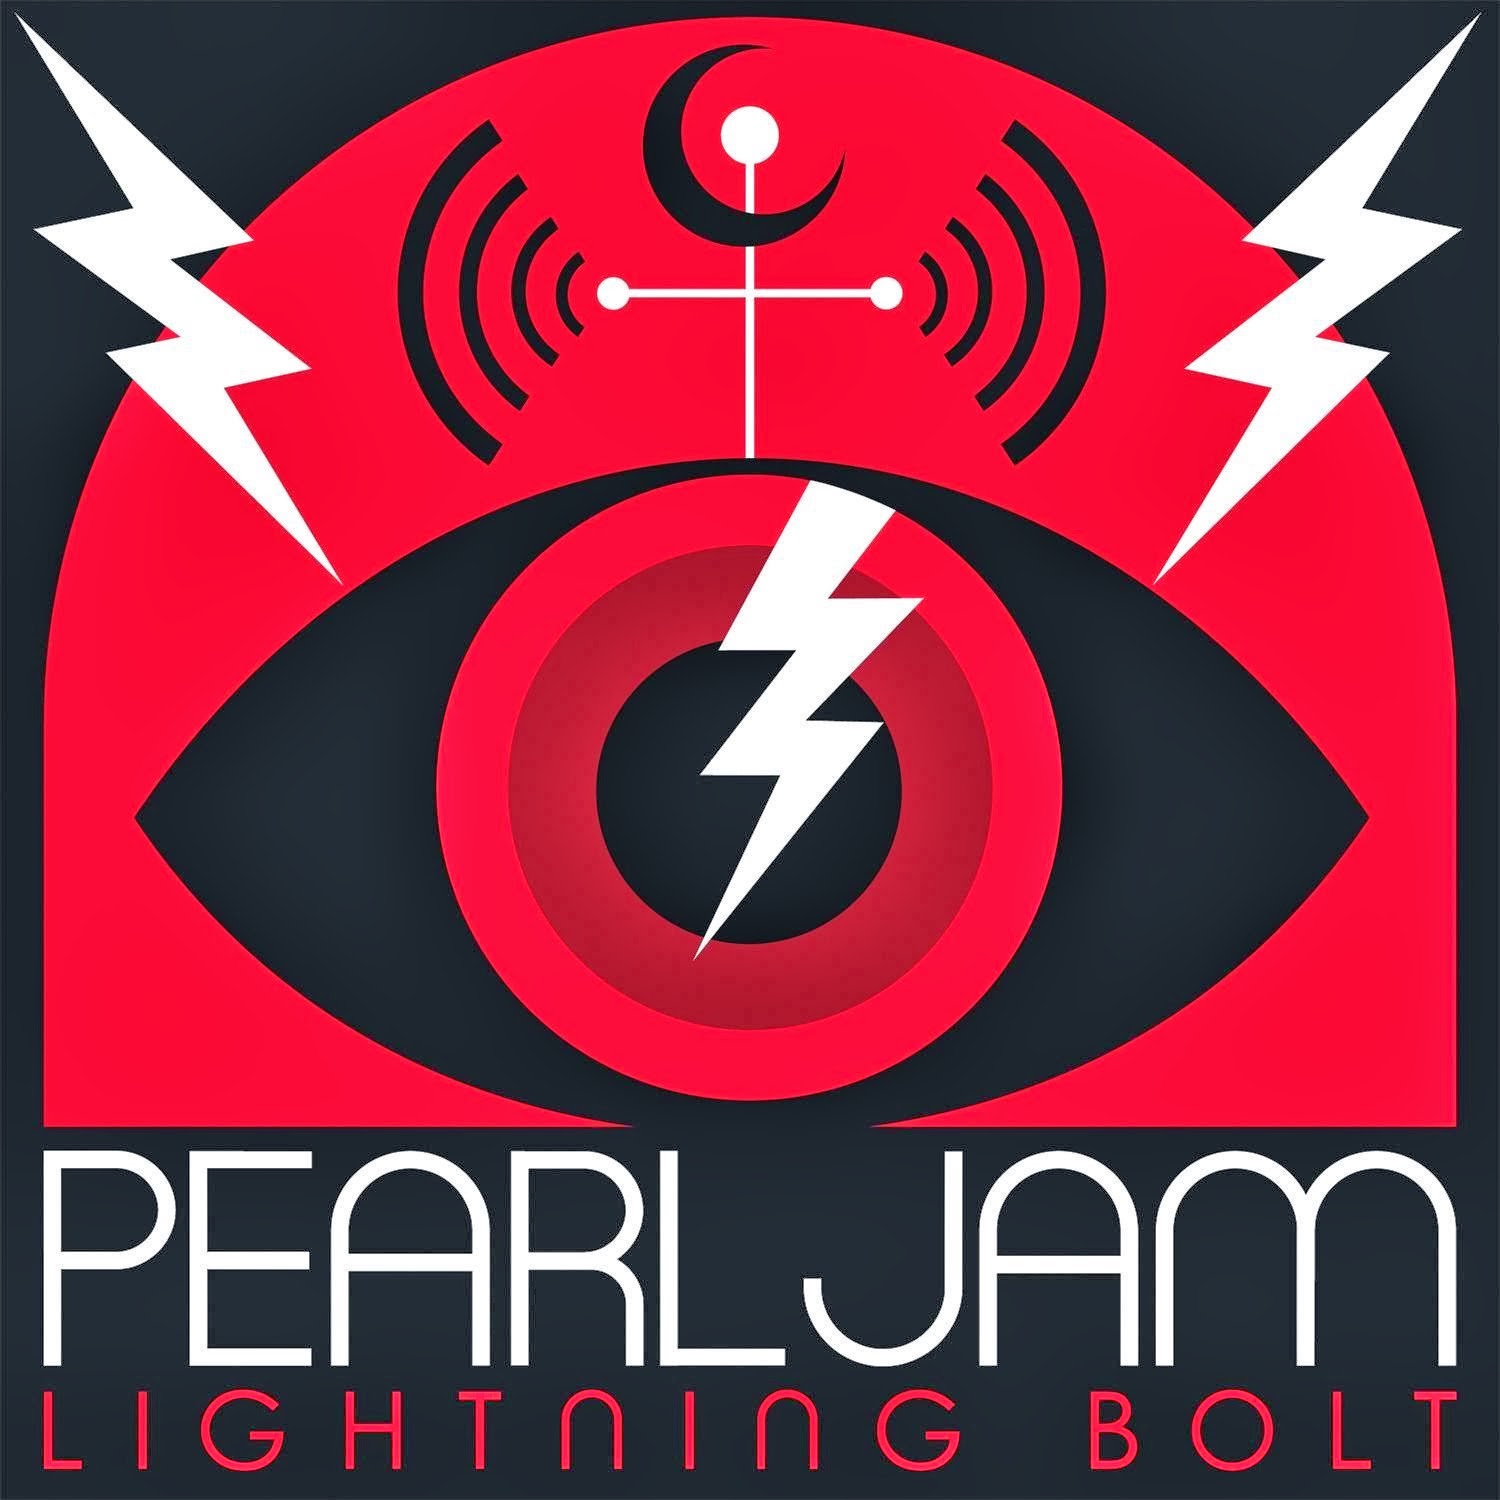 Pearl Jam Lightning Bolt 2013